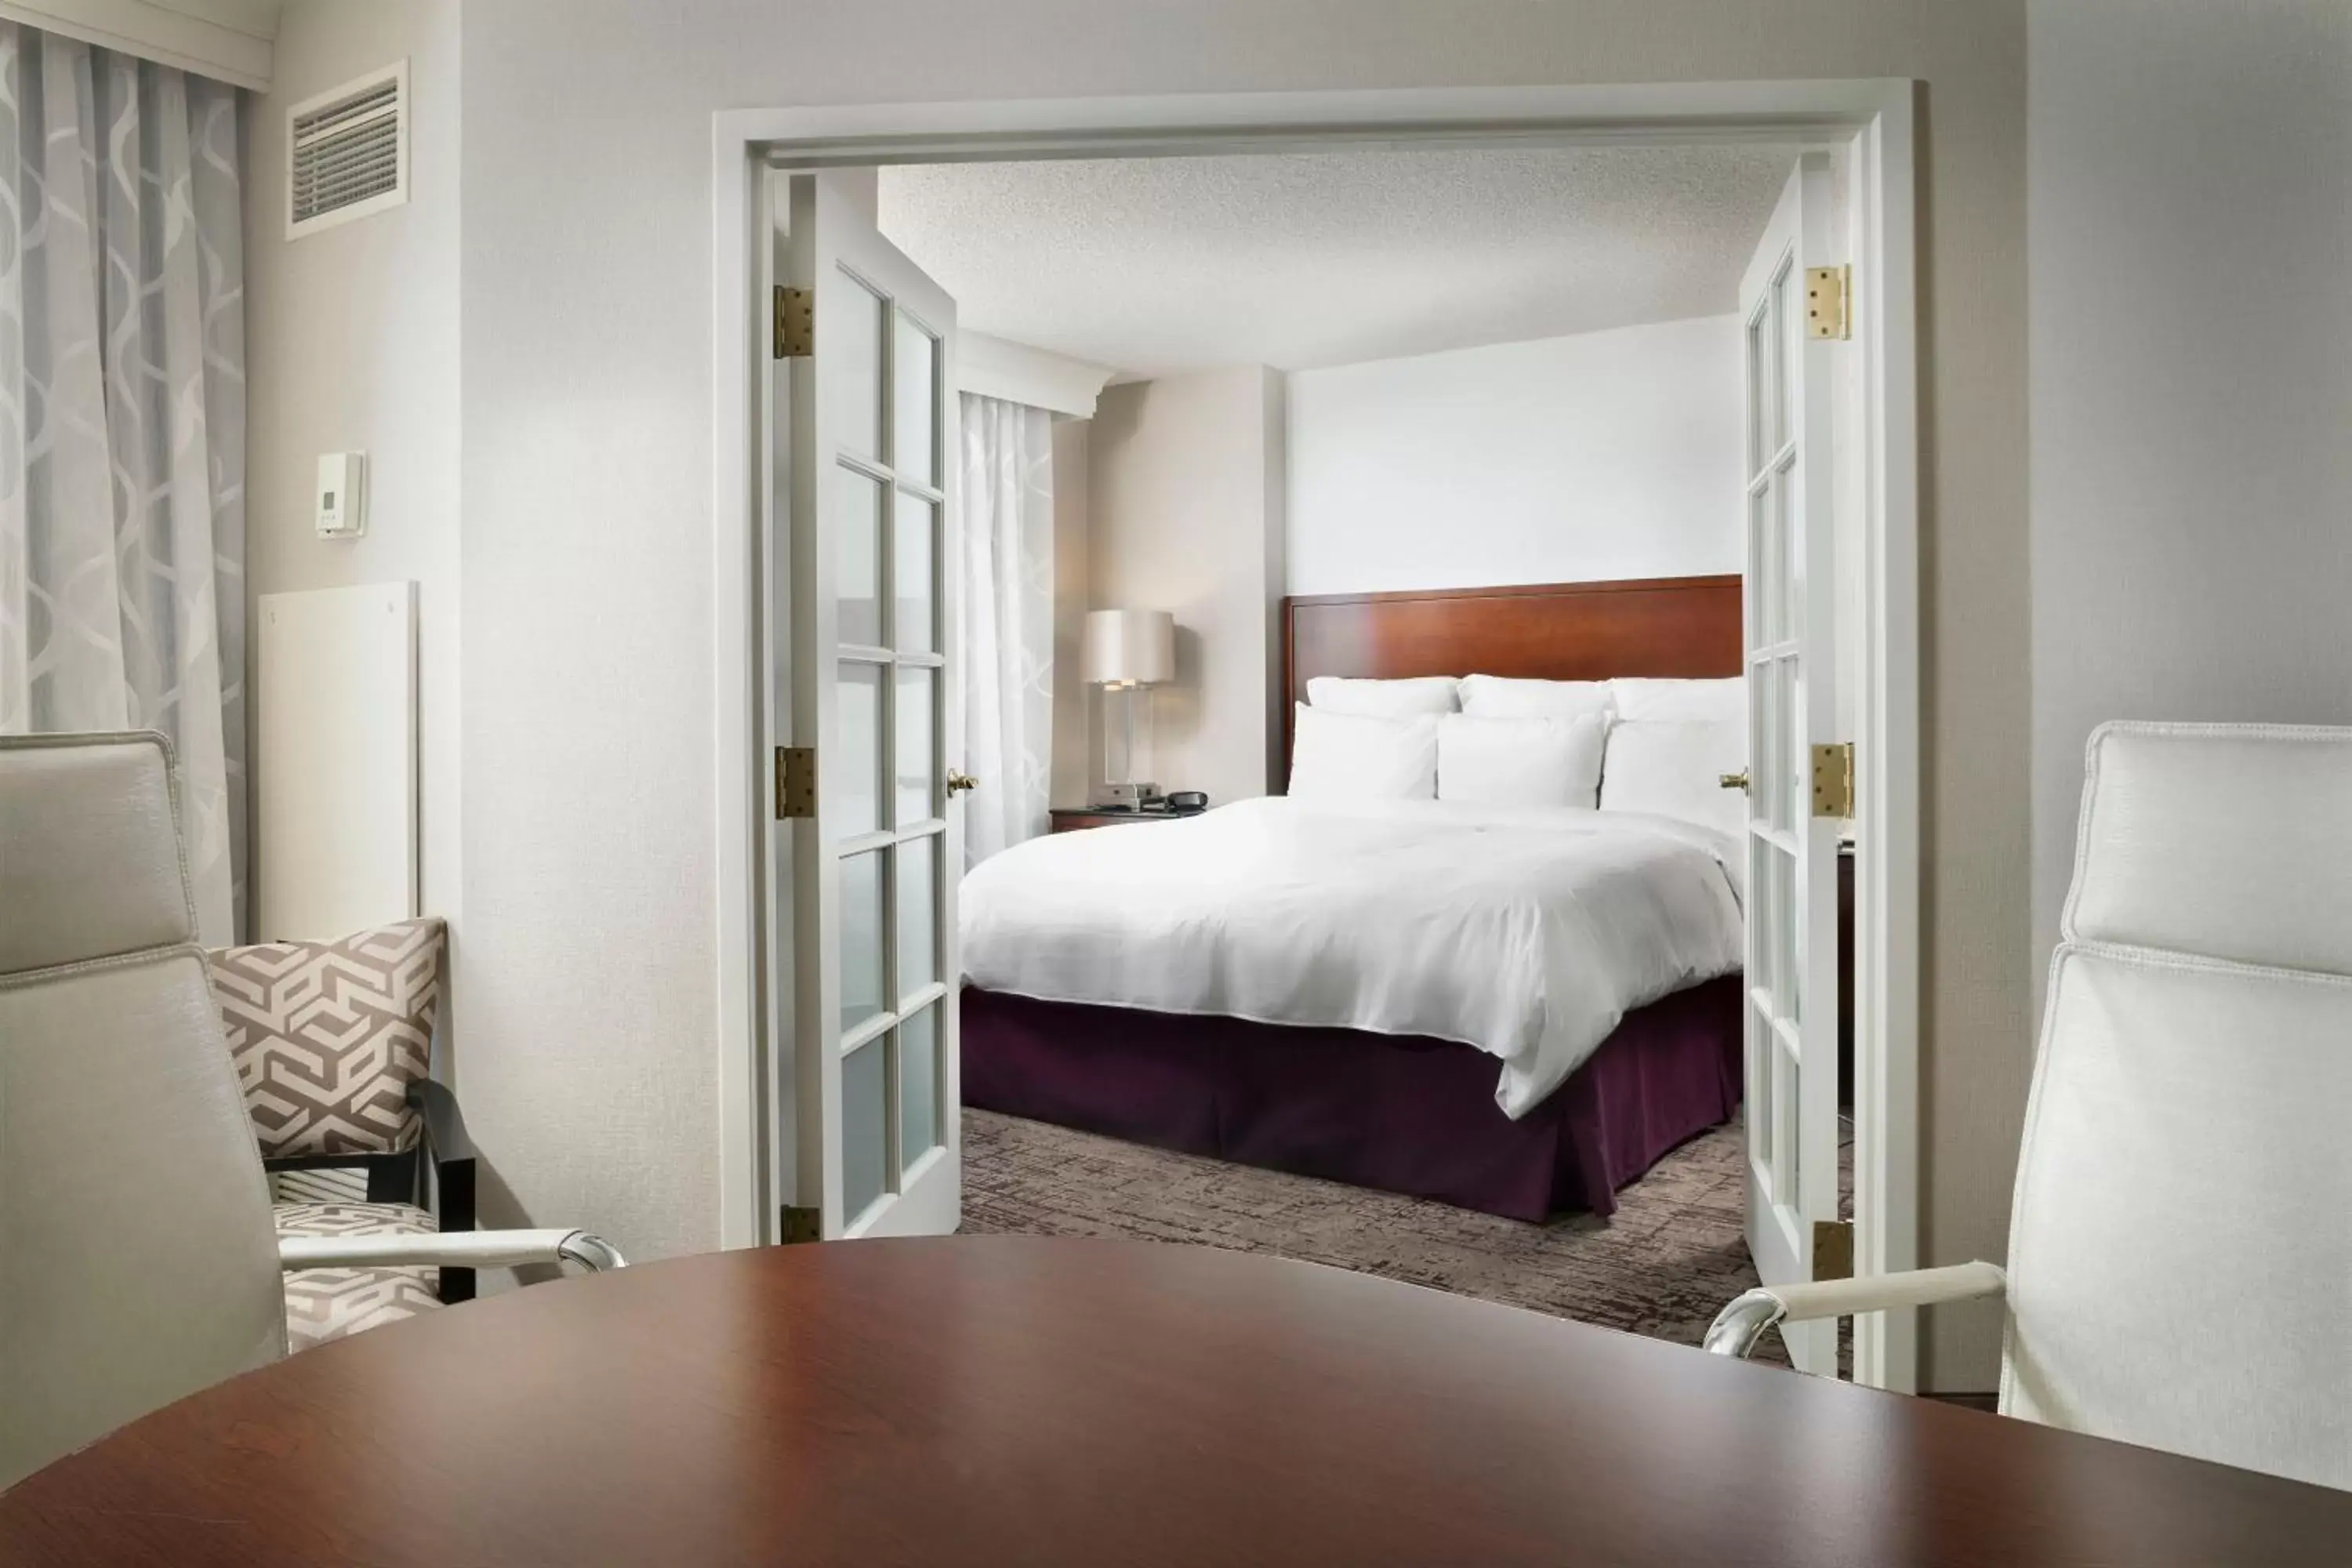 Living room, Bed in Chicago Marriott Suites Deerfield